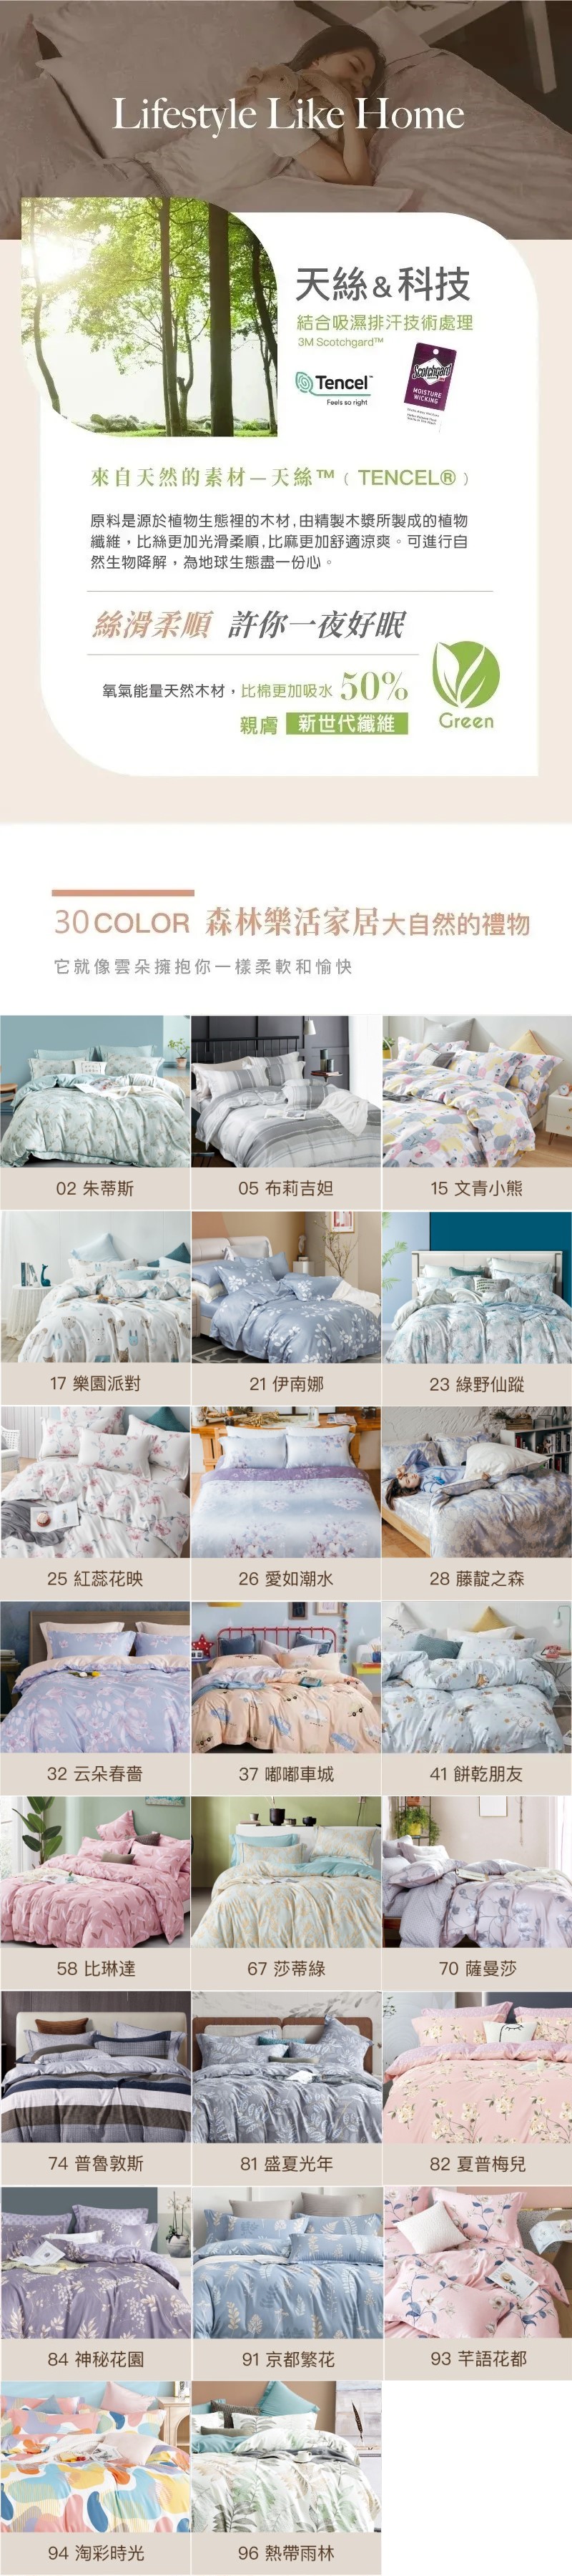 【夢之語】3M吸濕排汗萊賽爾天絲七件式床罩組 雙人/加大